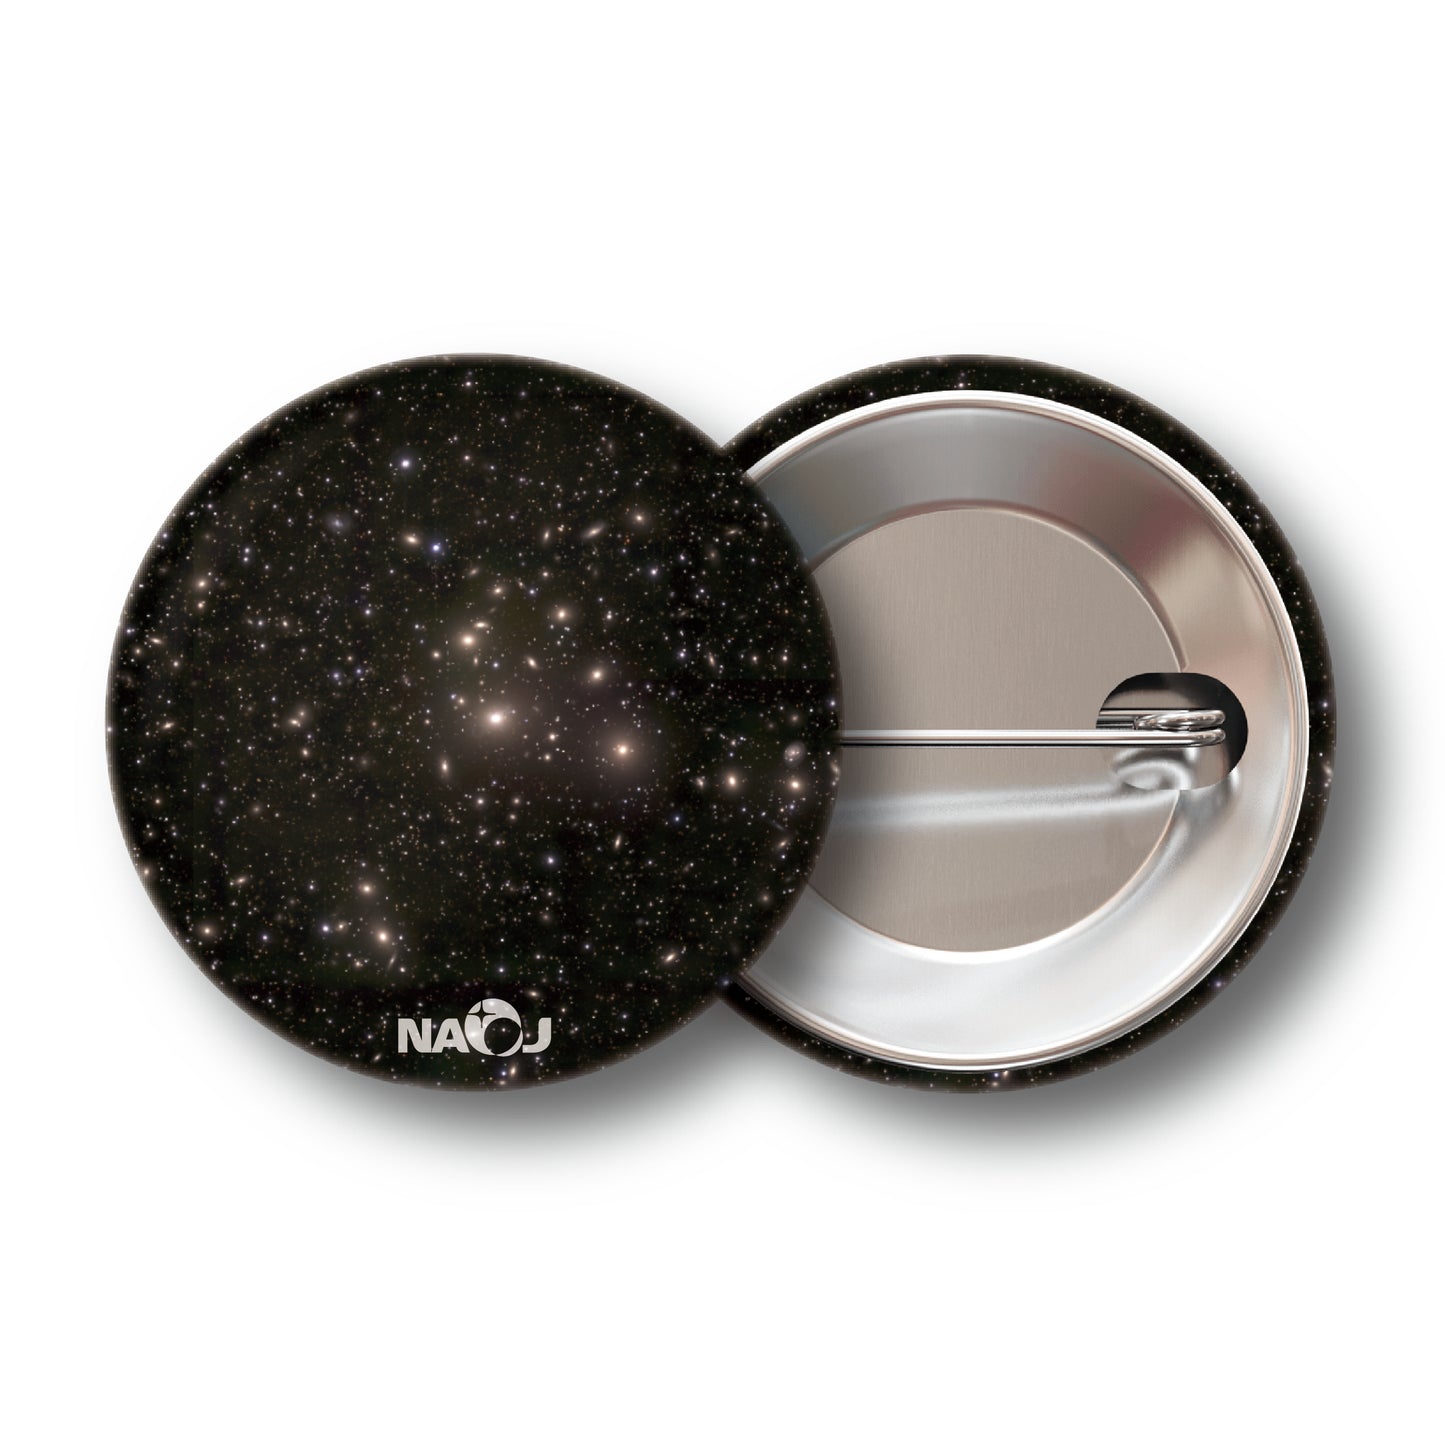 国立天文台  すばる望遠鏡HSCで見る宇宙  缶バッジ [小] ペルセウス座銀河団 00